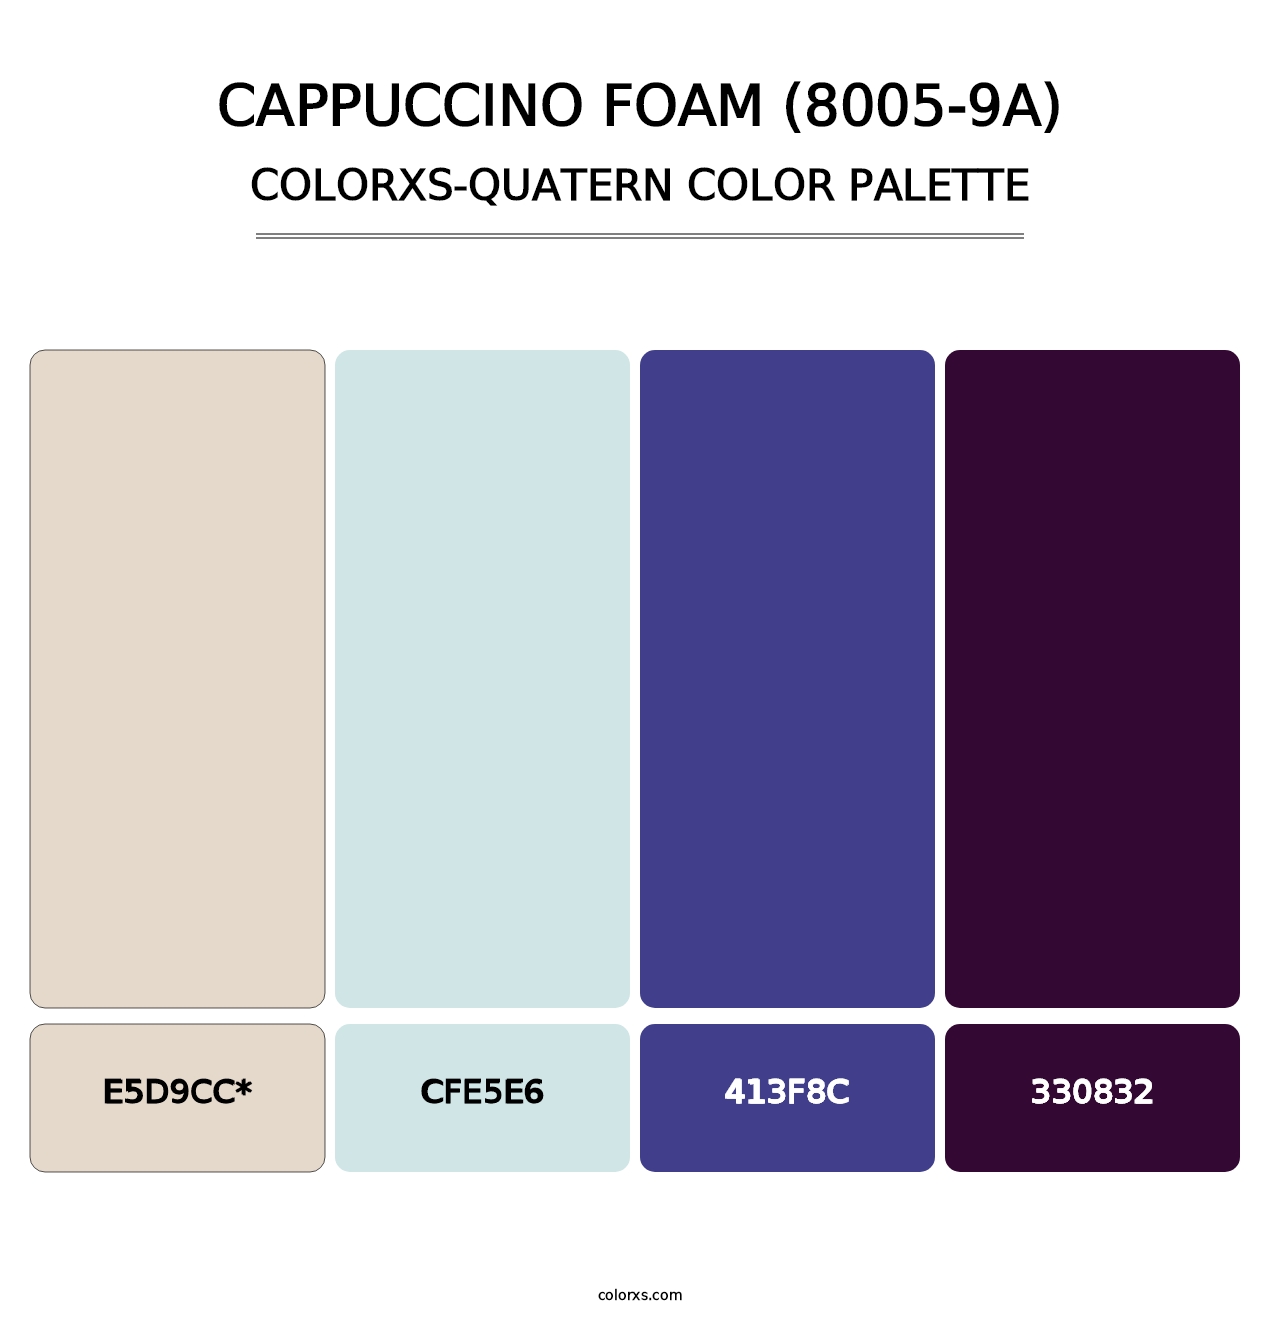 Cappuccino Foam (8005-9A) - Colorxs Quatern Palette